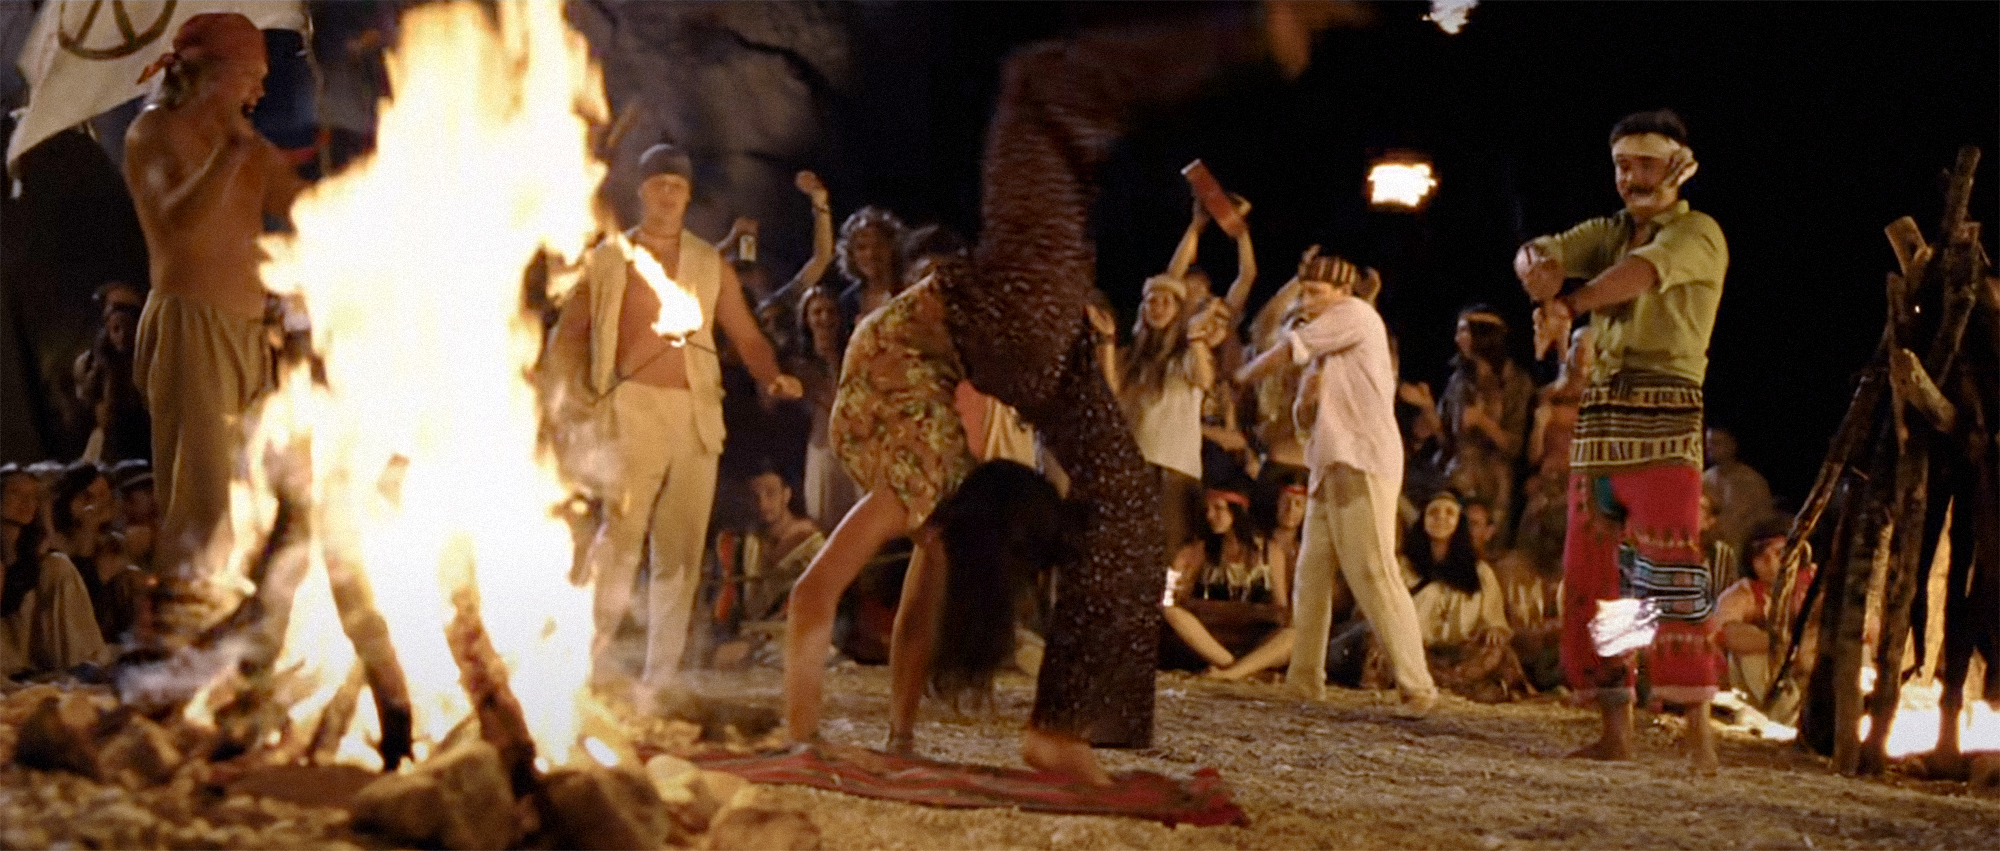 Кадр из фильма. Так сцена с танцующими и веселящимися актерами массовых сцен выглядит на экране. Источник: domsolncafilm.ru